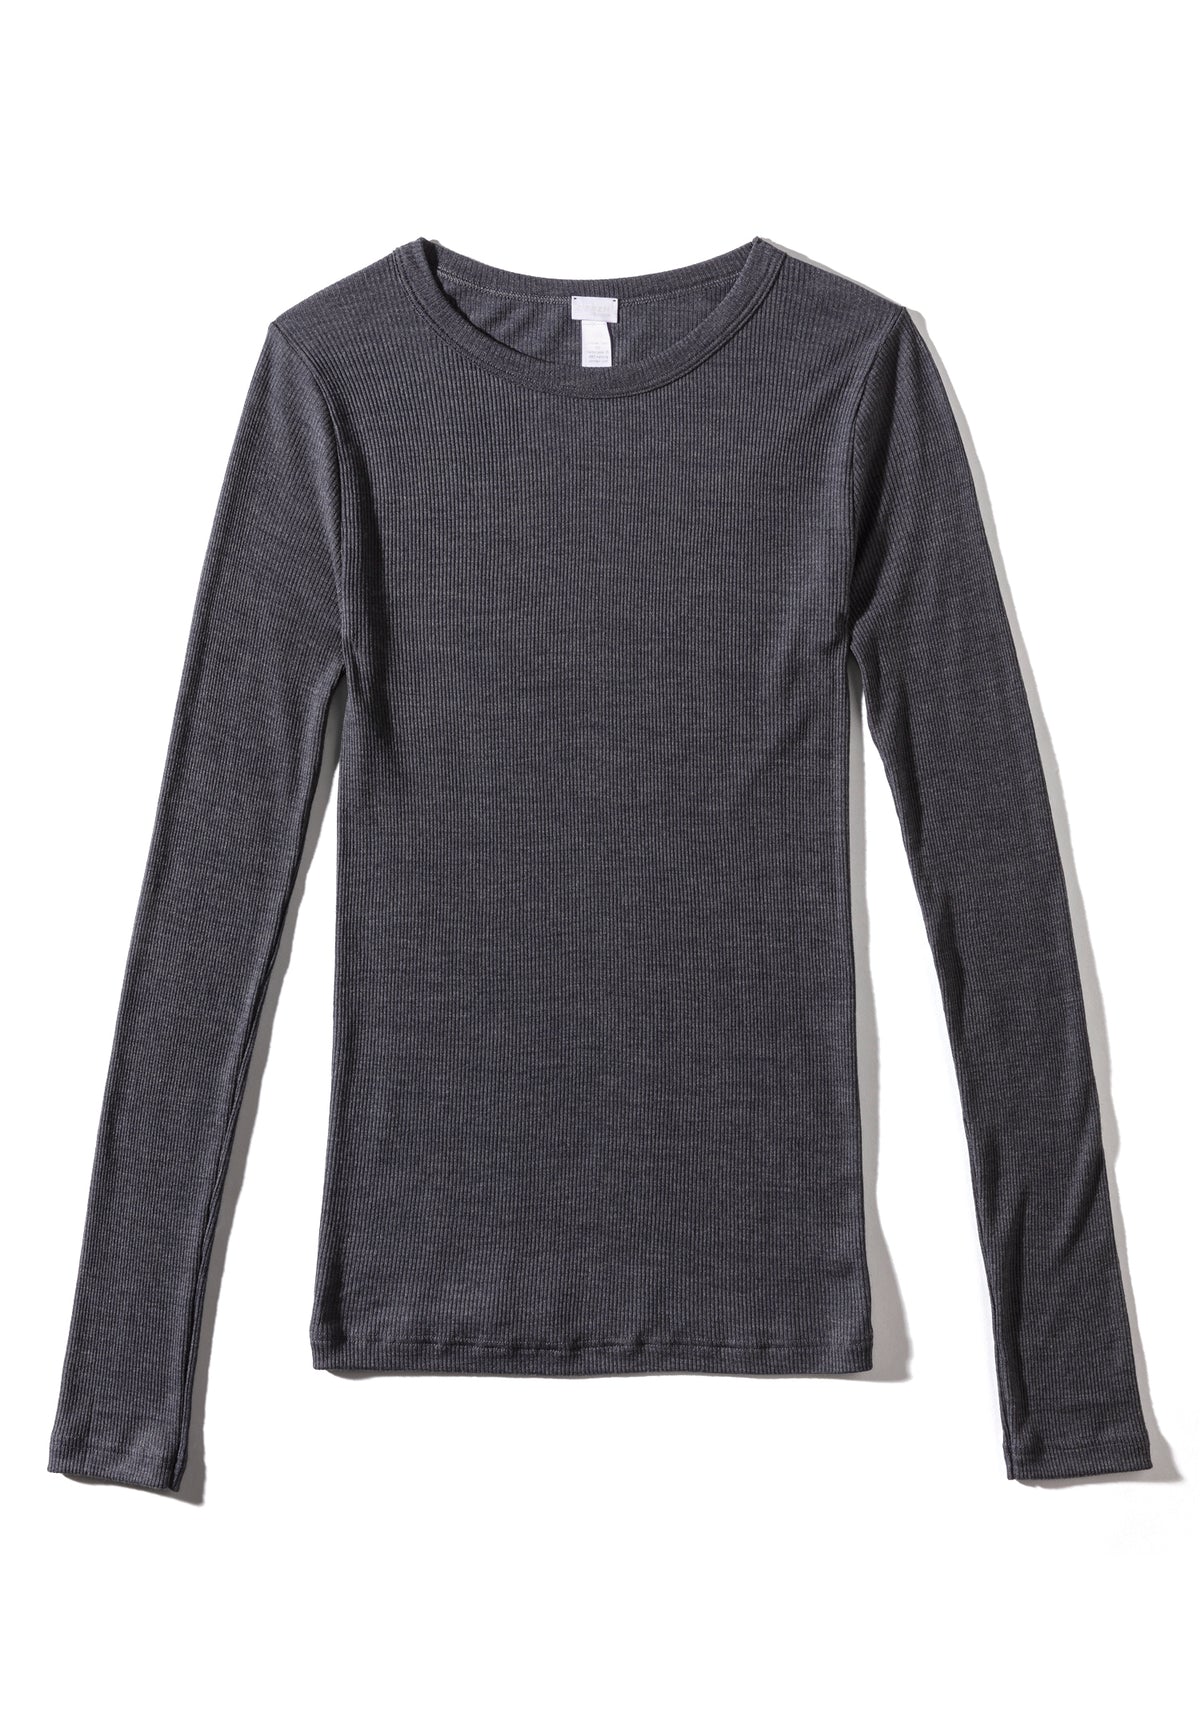 Wool &amp; Silk | T-Shirt langarm - anthrazit